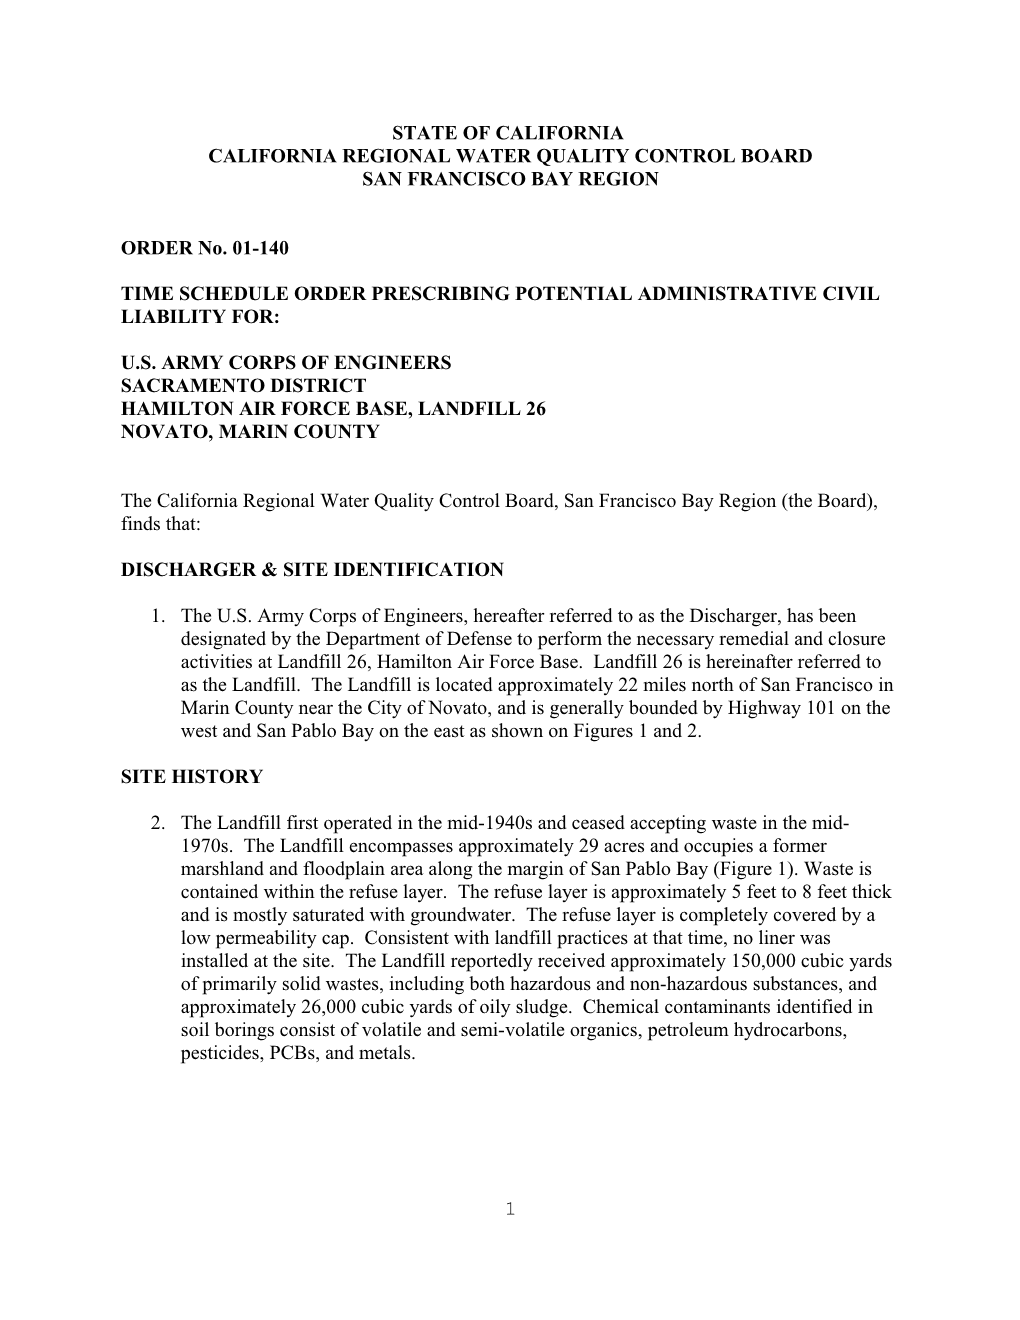 Model SCR - SCR Amendment for Non-MSCA Site - 2/96 Version s1